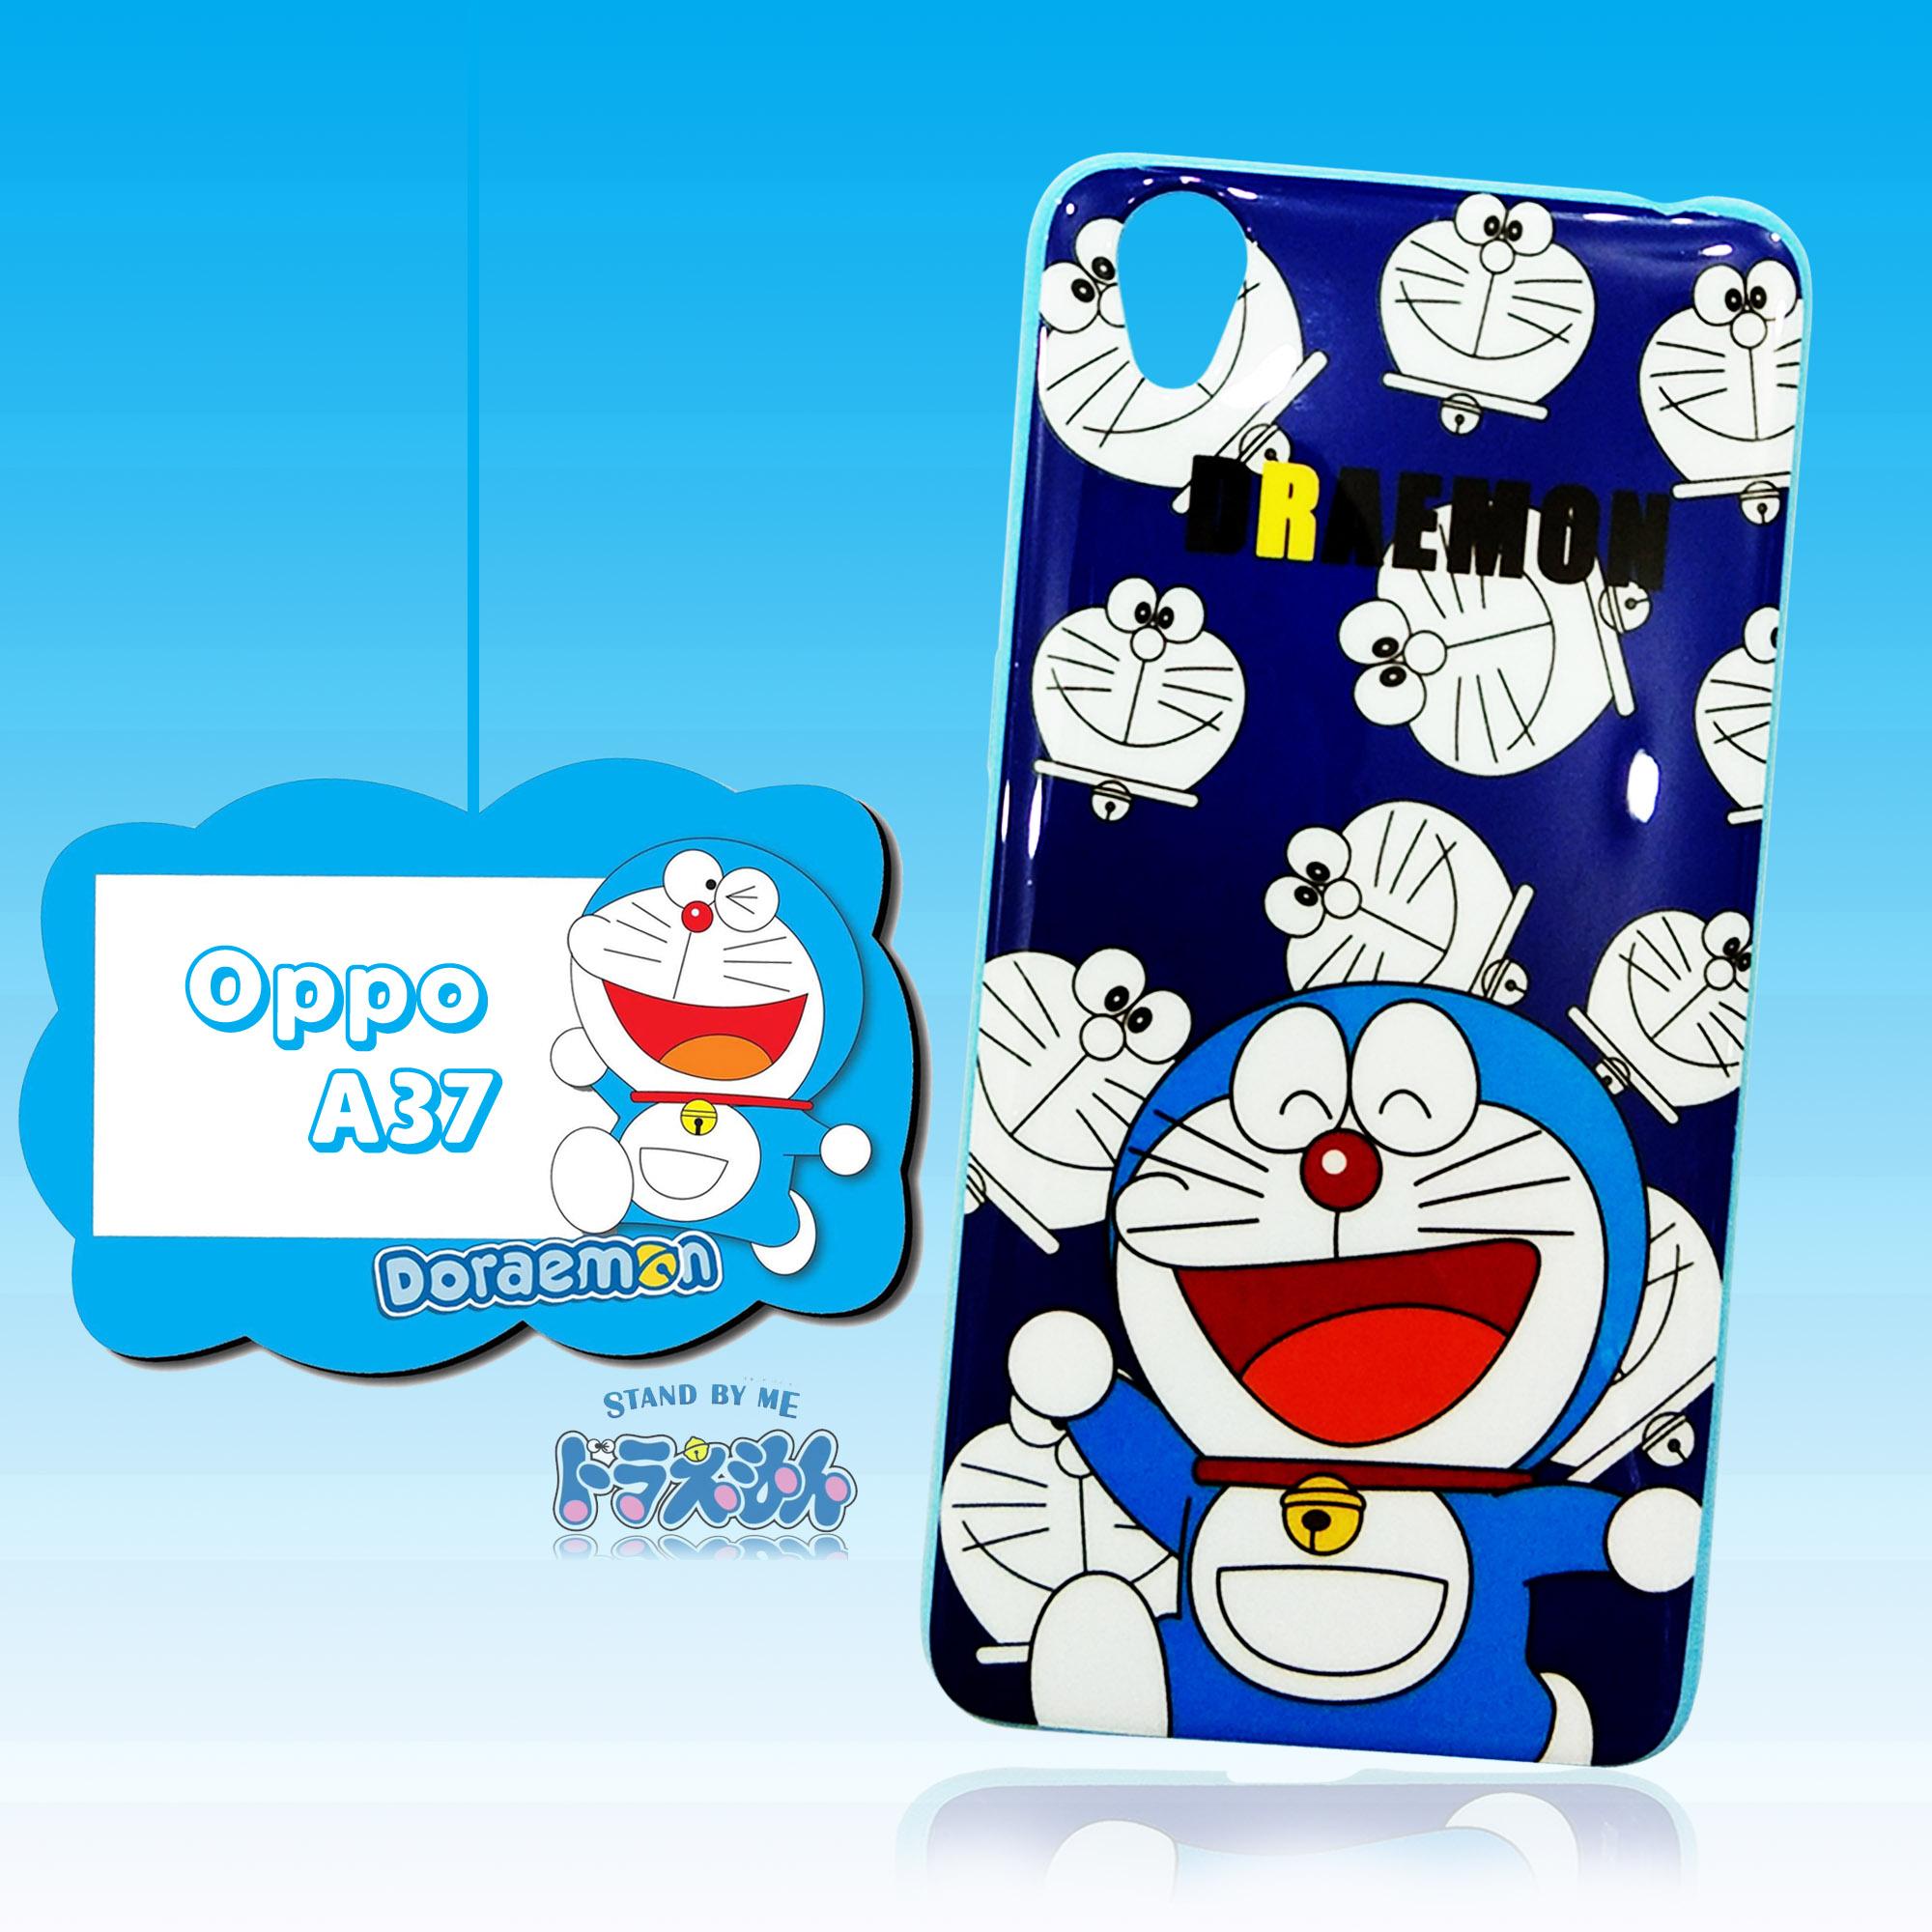 Casing Hp  Oppo  A37  Gambar Doraemon Inspirasi Desain Menarik